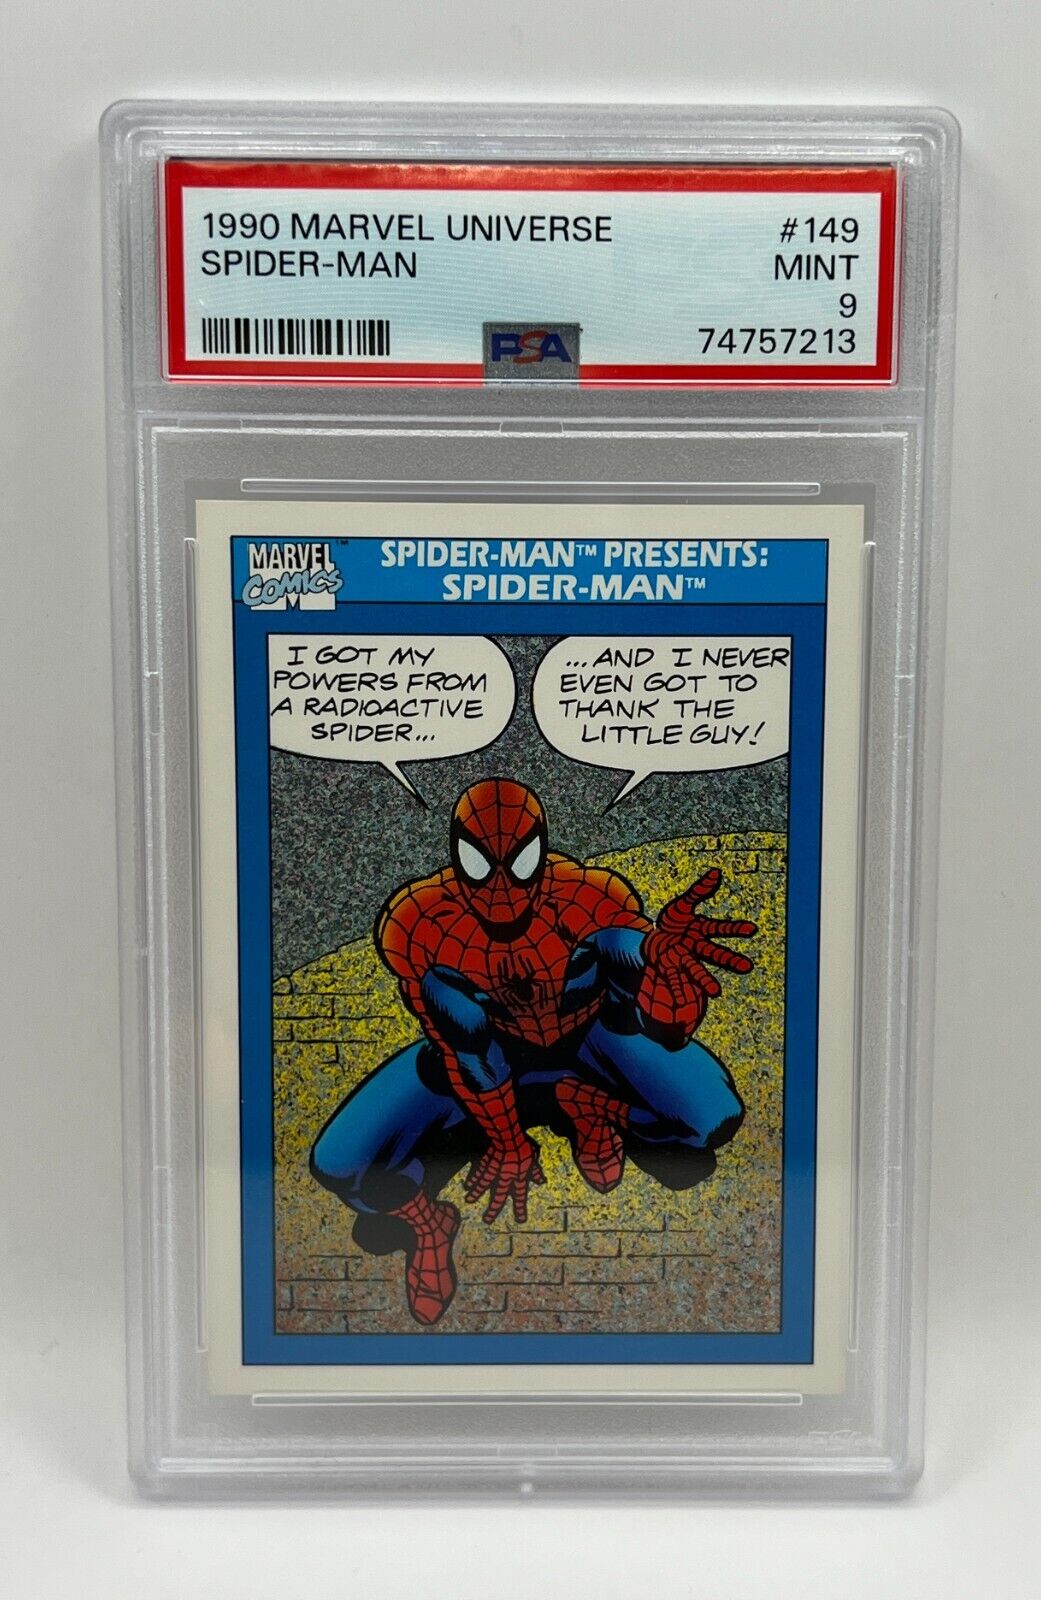 1990 Marvel Universe - #149 Spider-Man Presents Spider-Man - PSA 9 Mint Comics